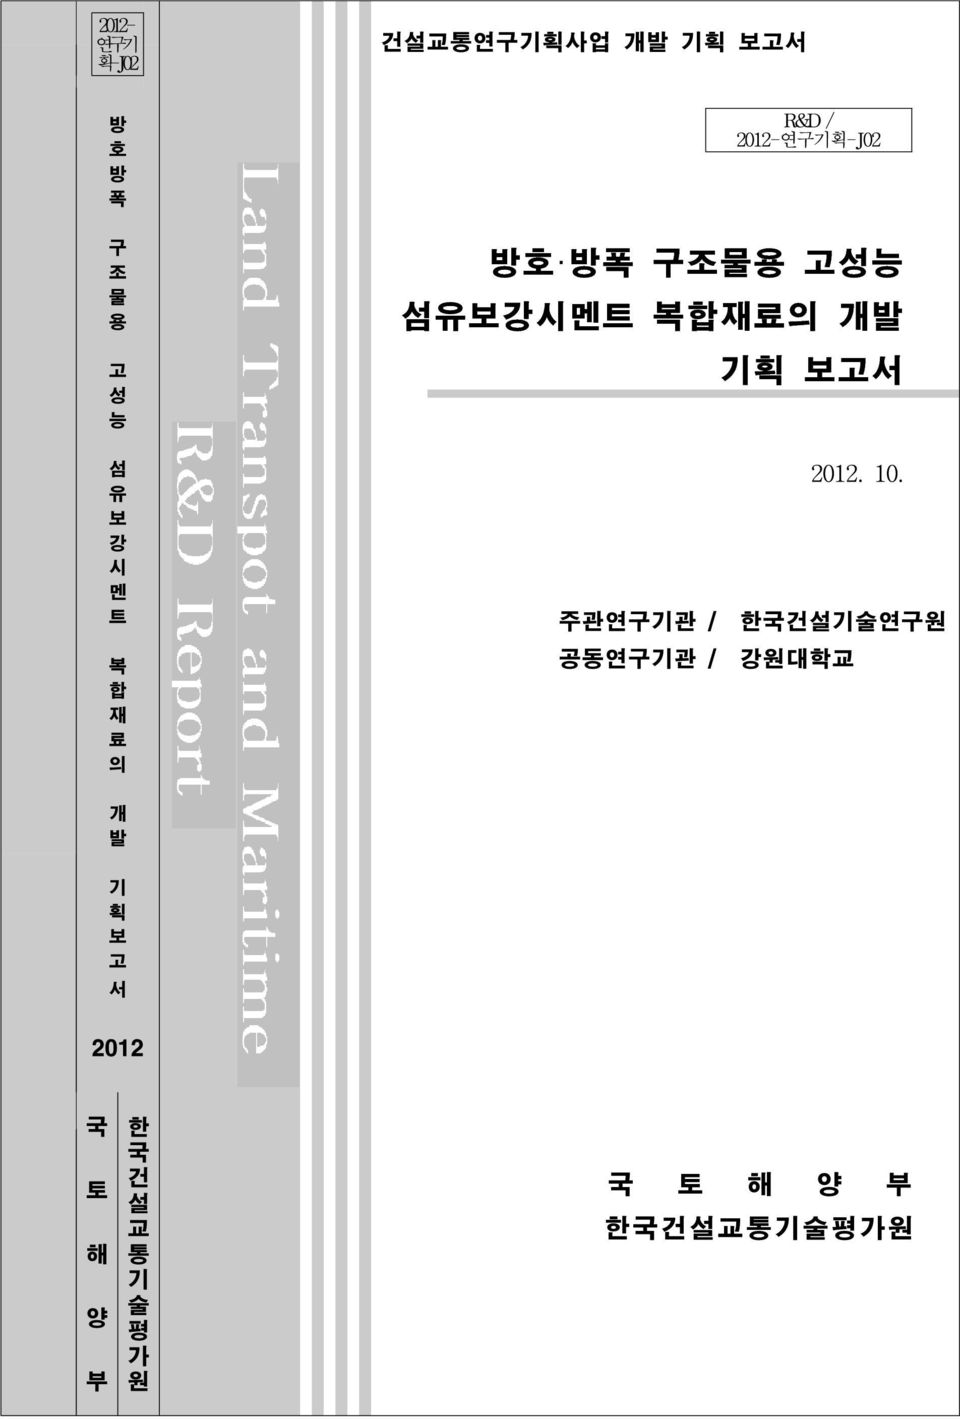 트 복 합 재 료 의 주관연구기관 / 공동연구기관 / 2012. 10.